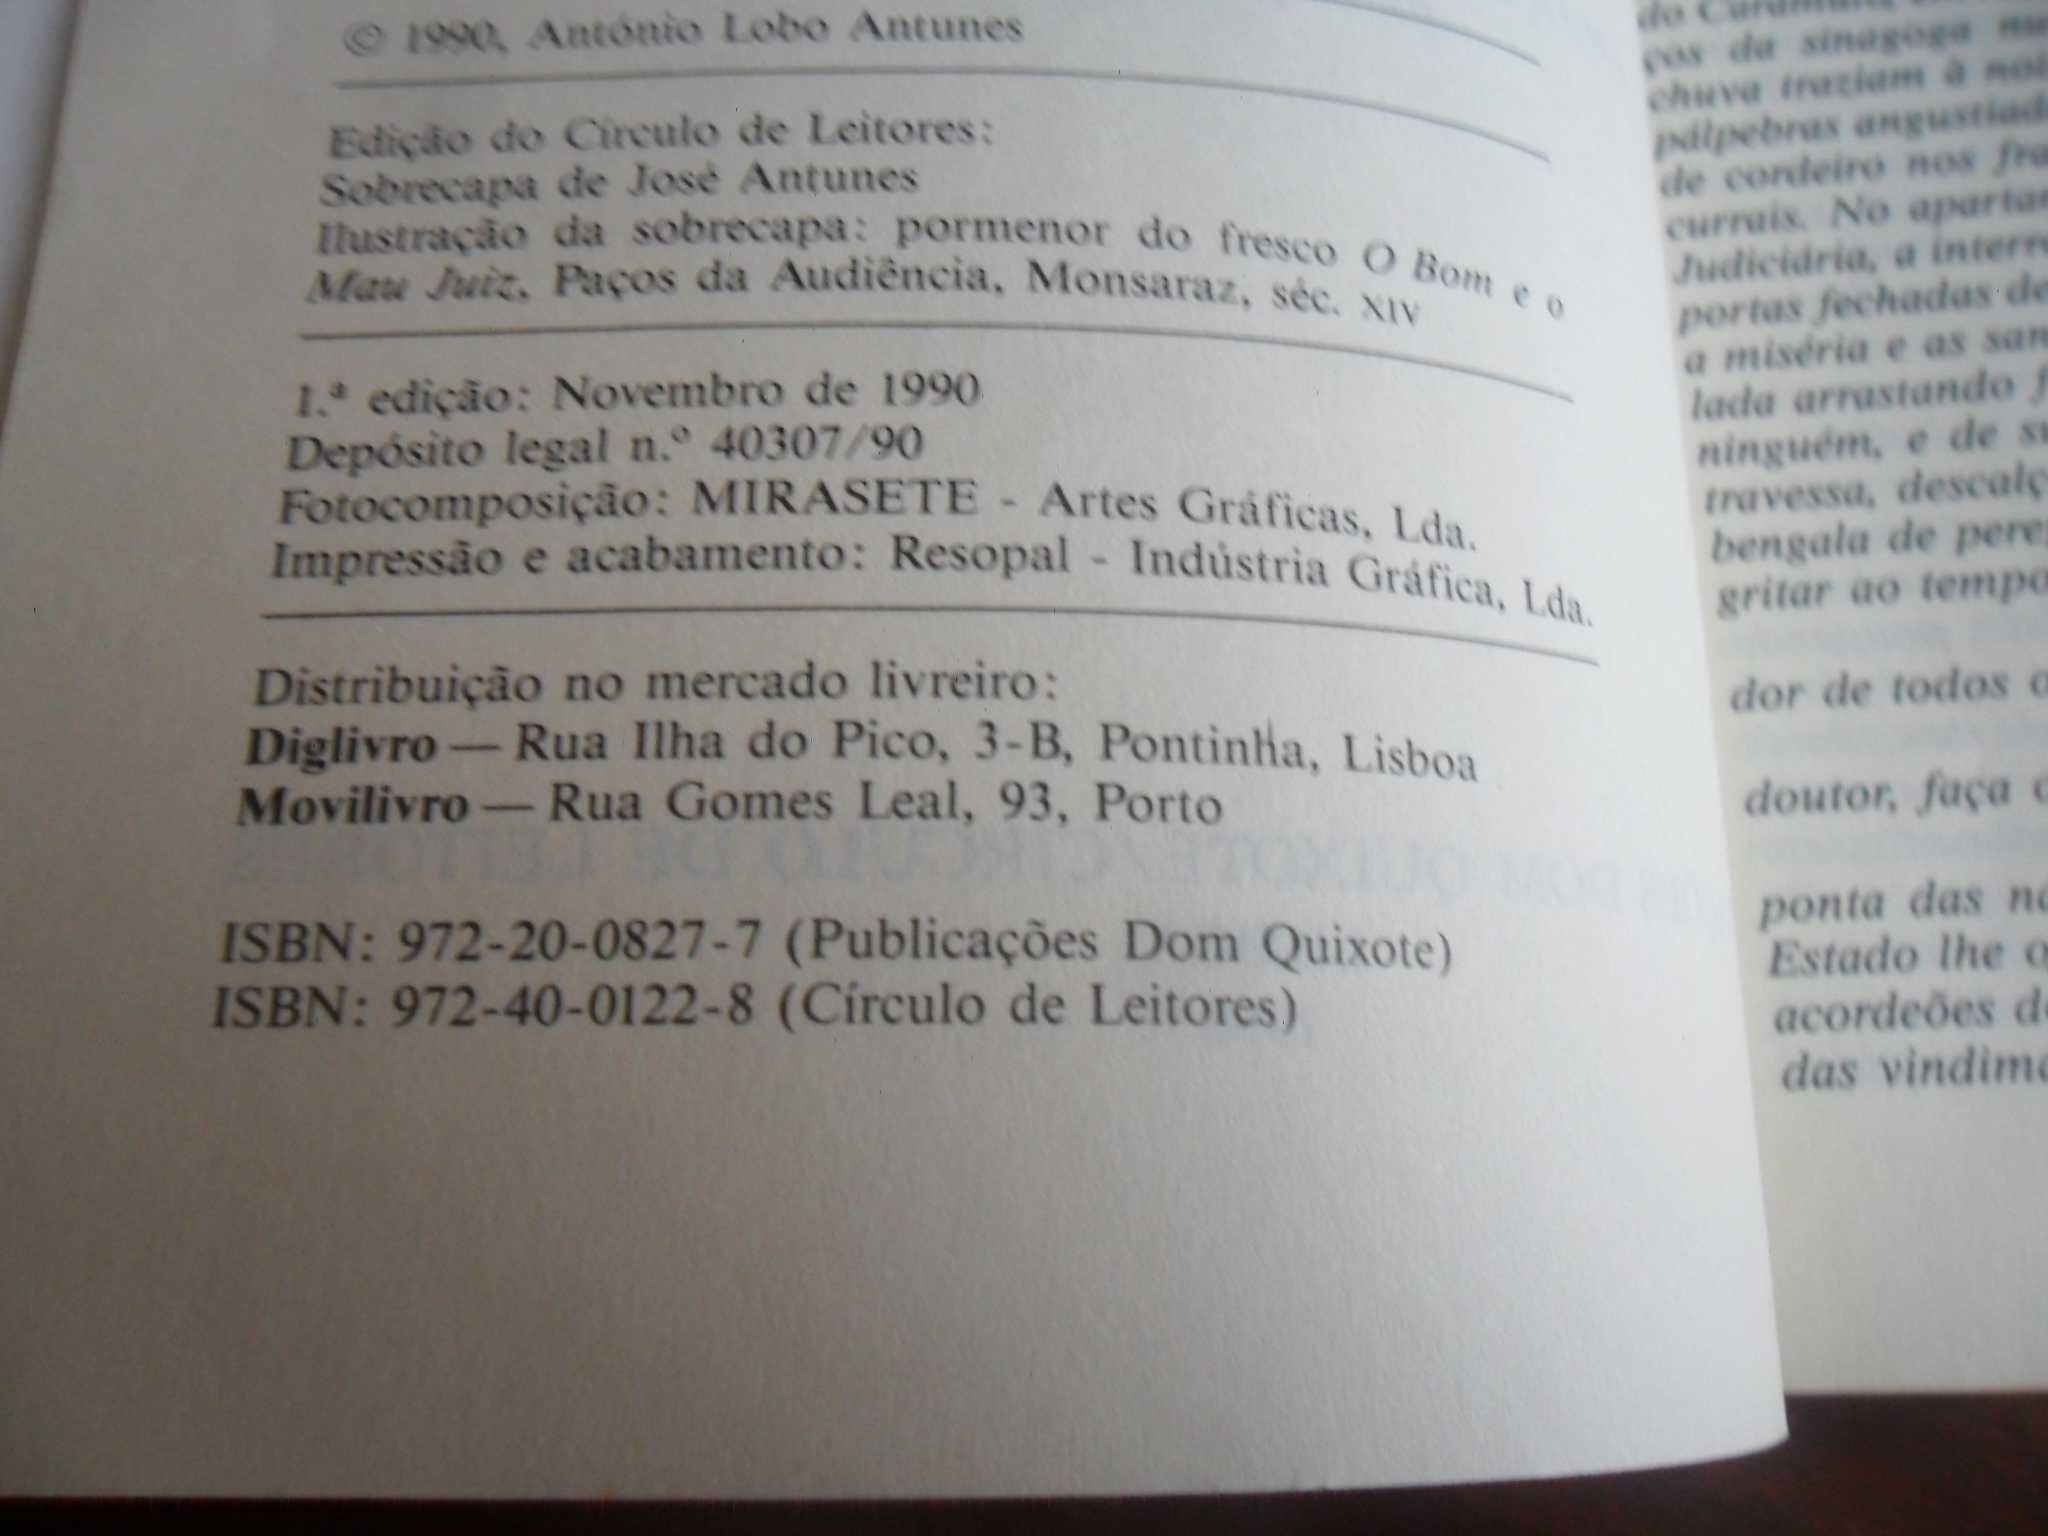 "Tratado das Paixões da Alma" de António Lobo Antunes - 1ª Edição 1990